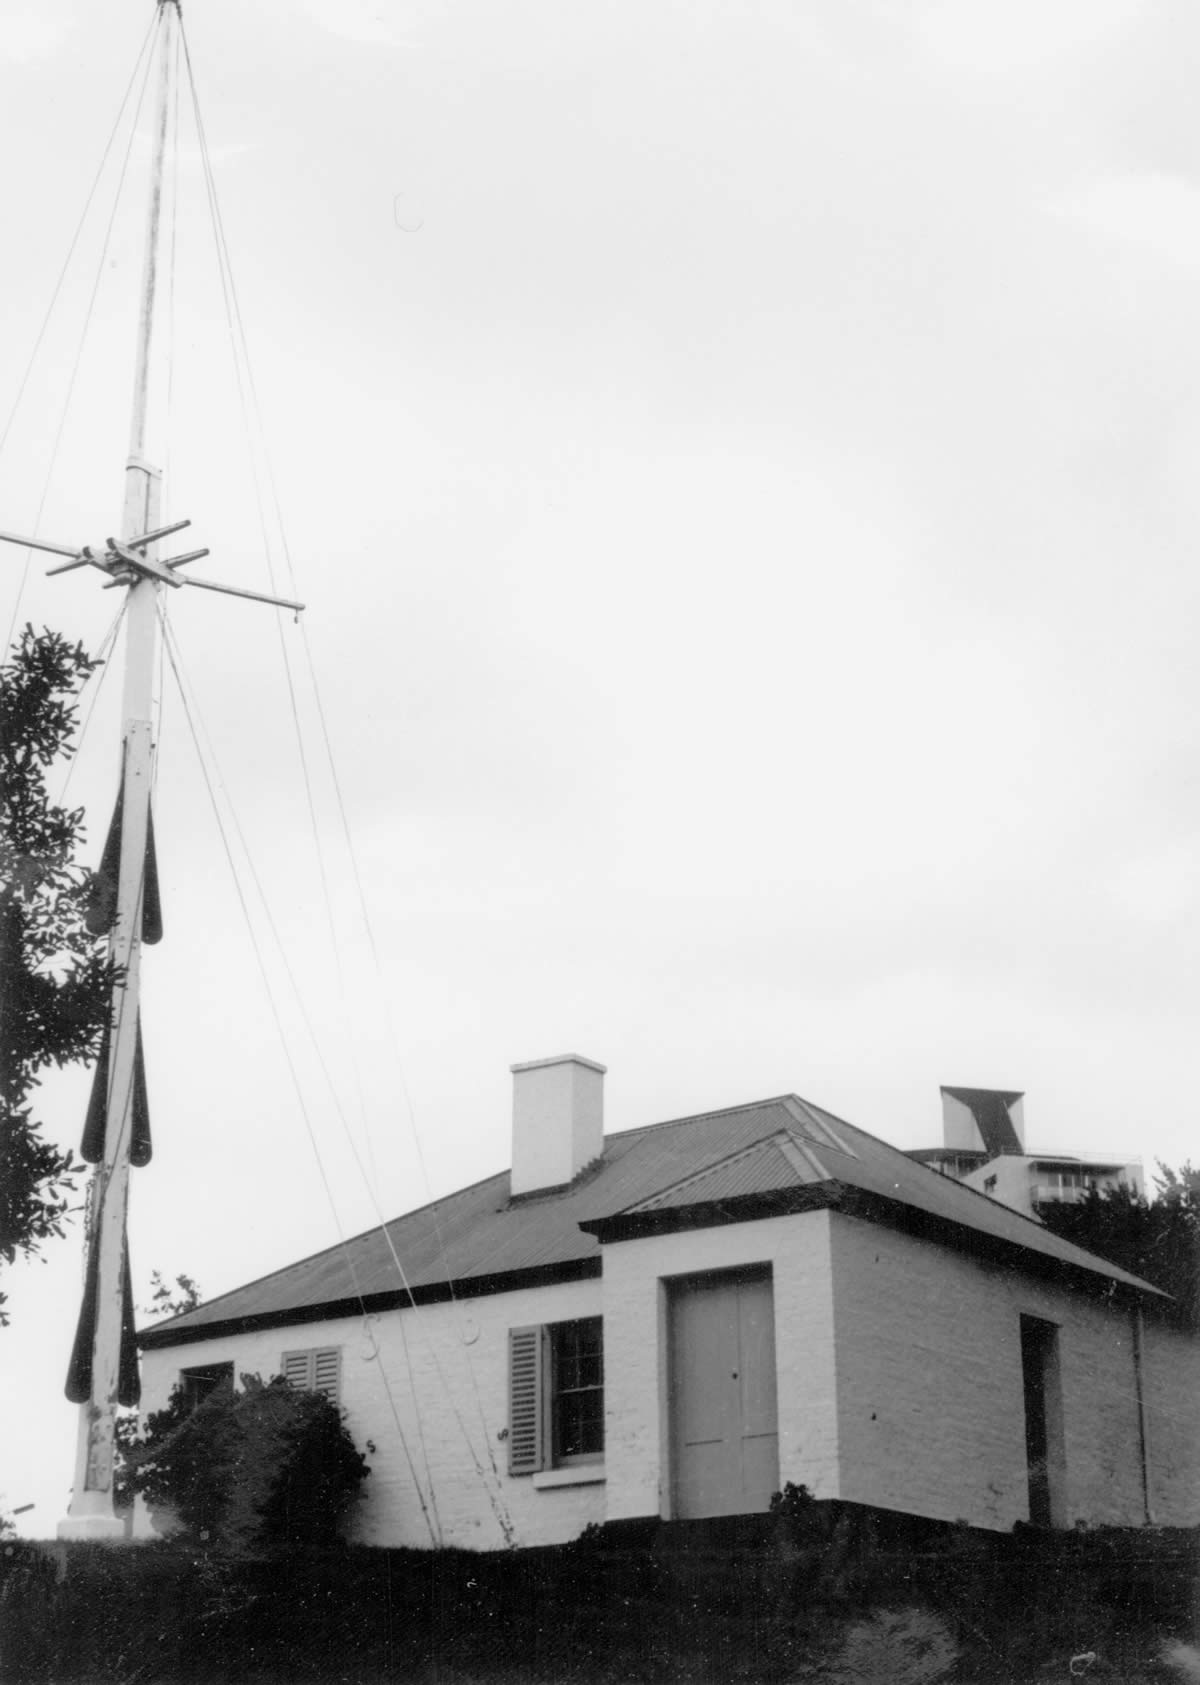 Semaphore mast